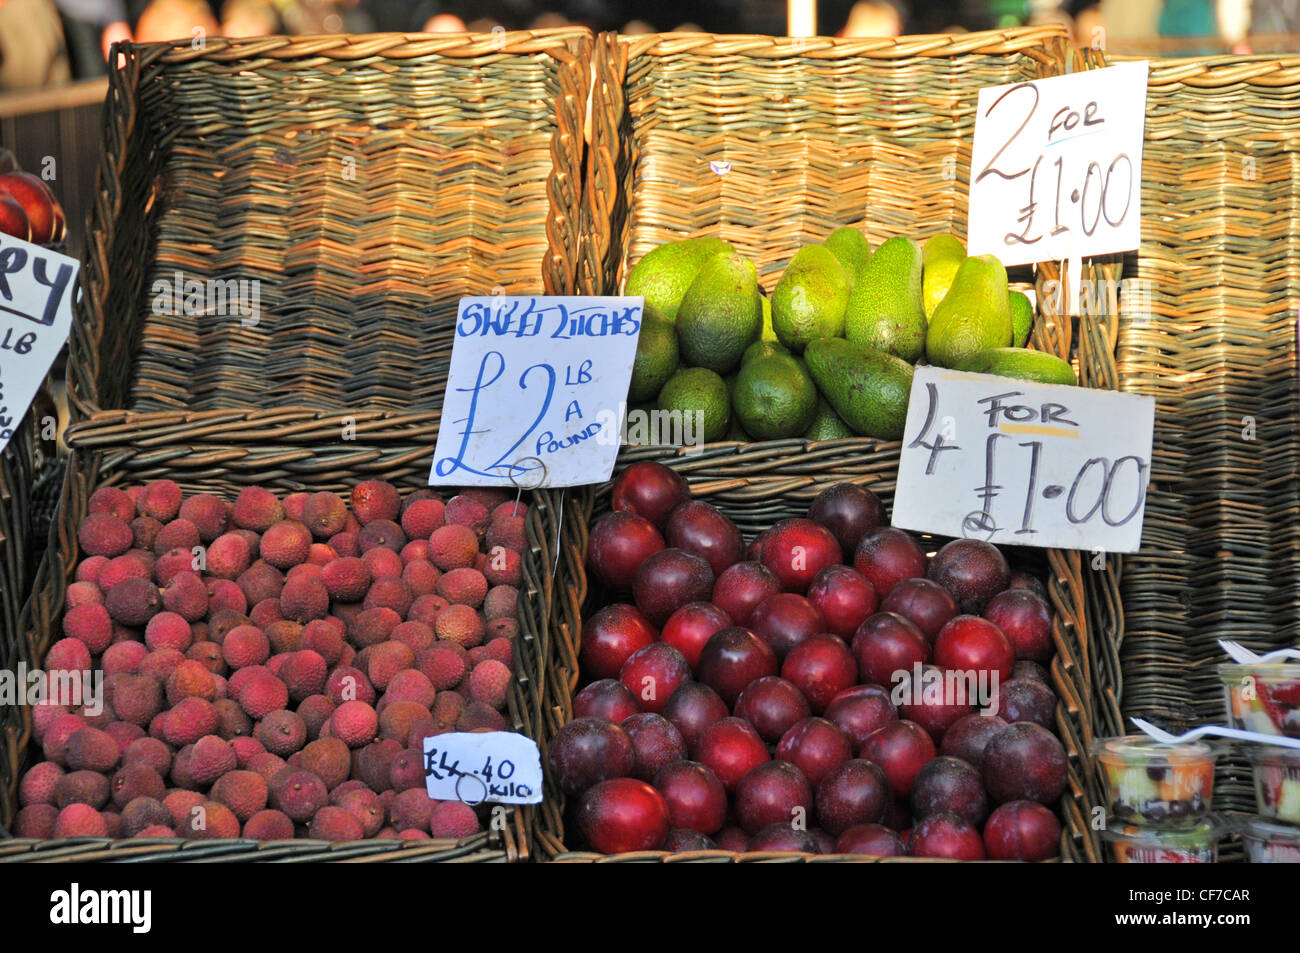 Fruta fresca ciruelas calada lichi peras cinco al día Foto de stock